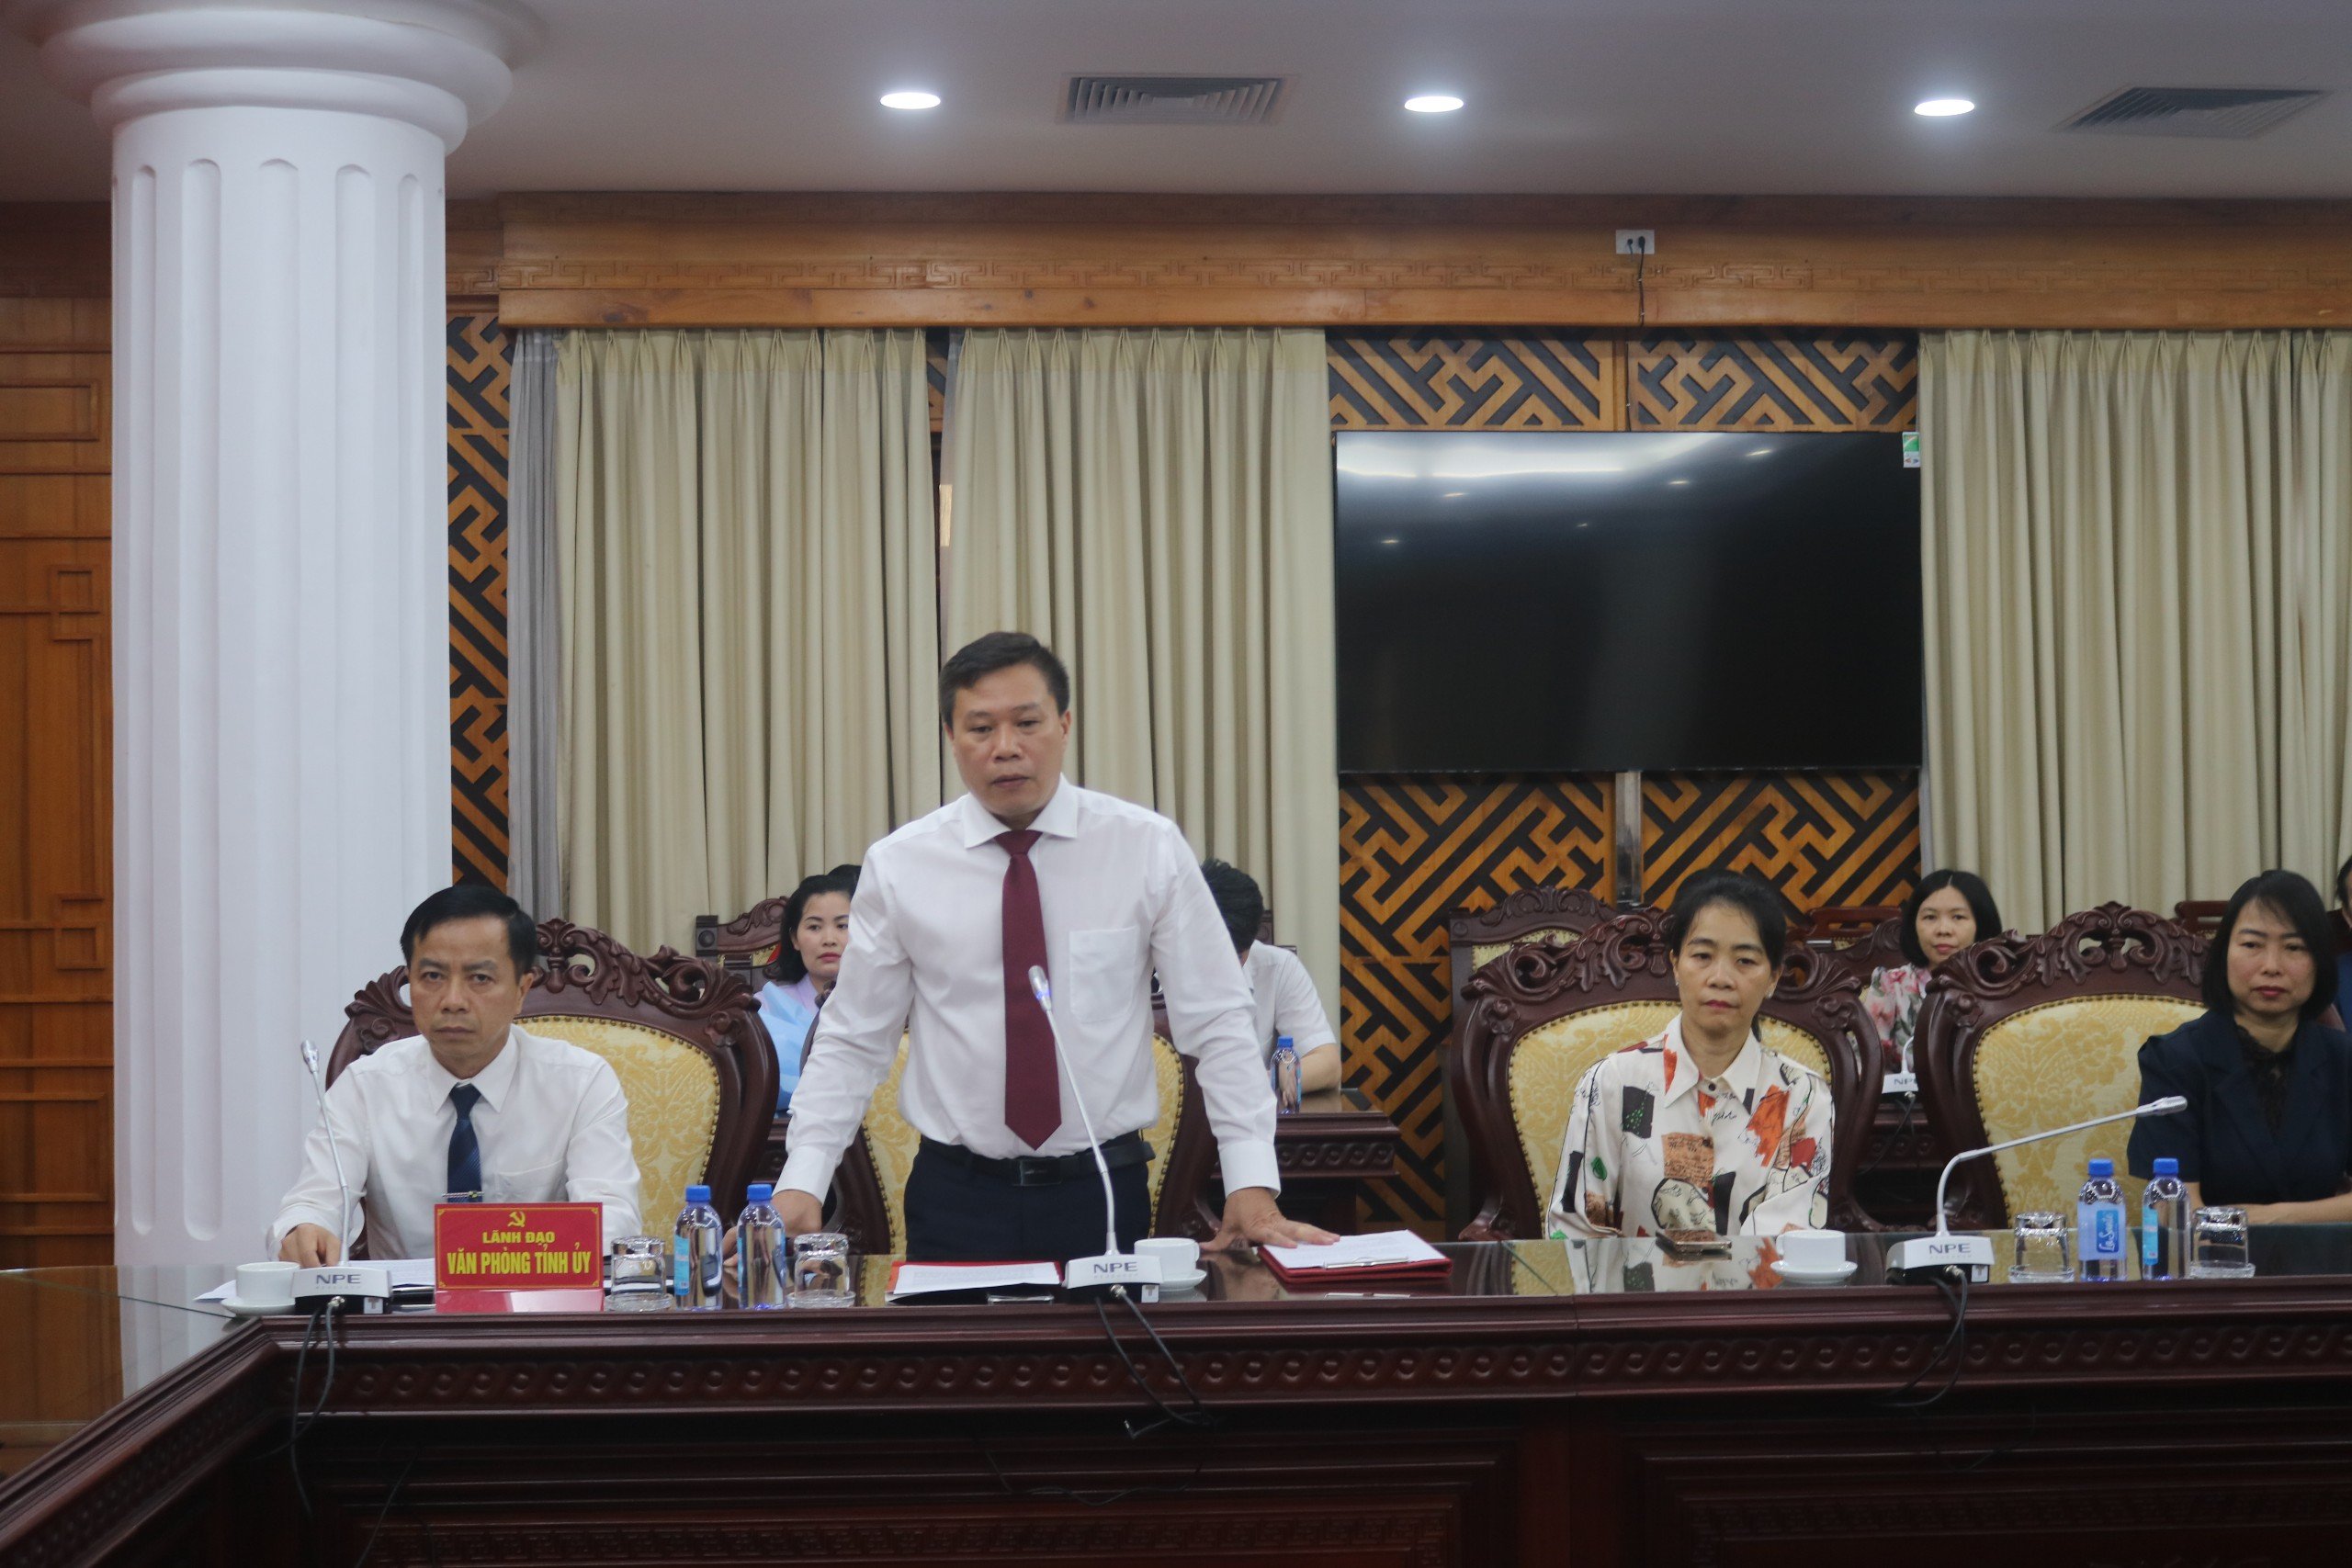 Chân dung Chánh văn phòng Tỉnh ủy Lạng Sơn vừa được bổ nhiệm- Ảnh 2.